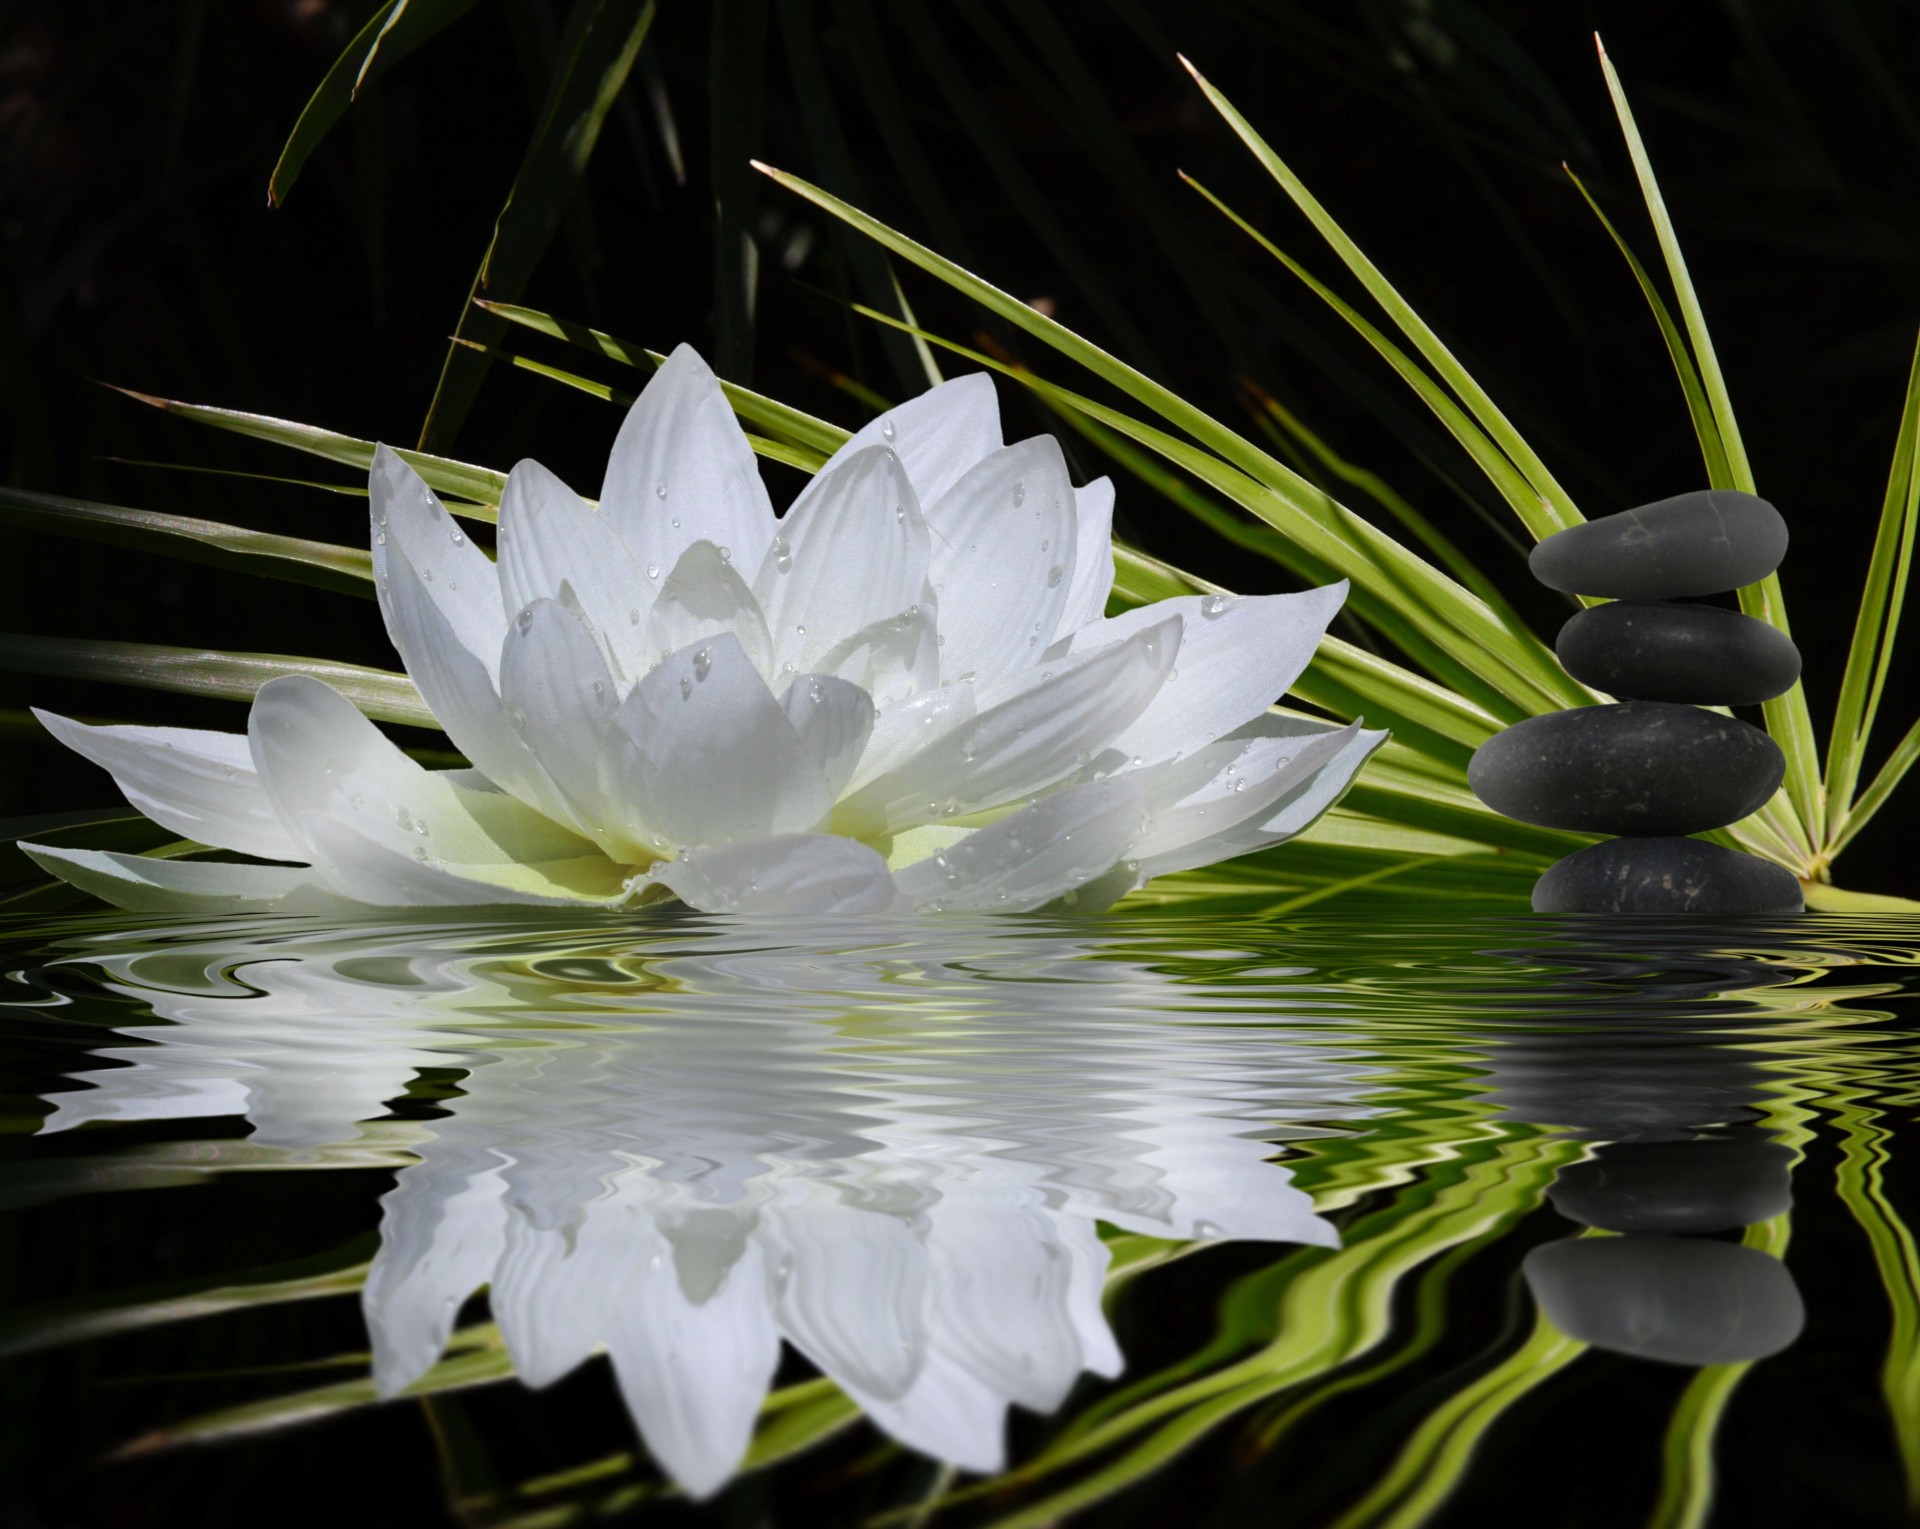 камни цветок стебли черный плоские вода водяная лилия отражение баланс боке. гармония зелень белый